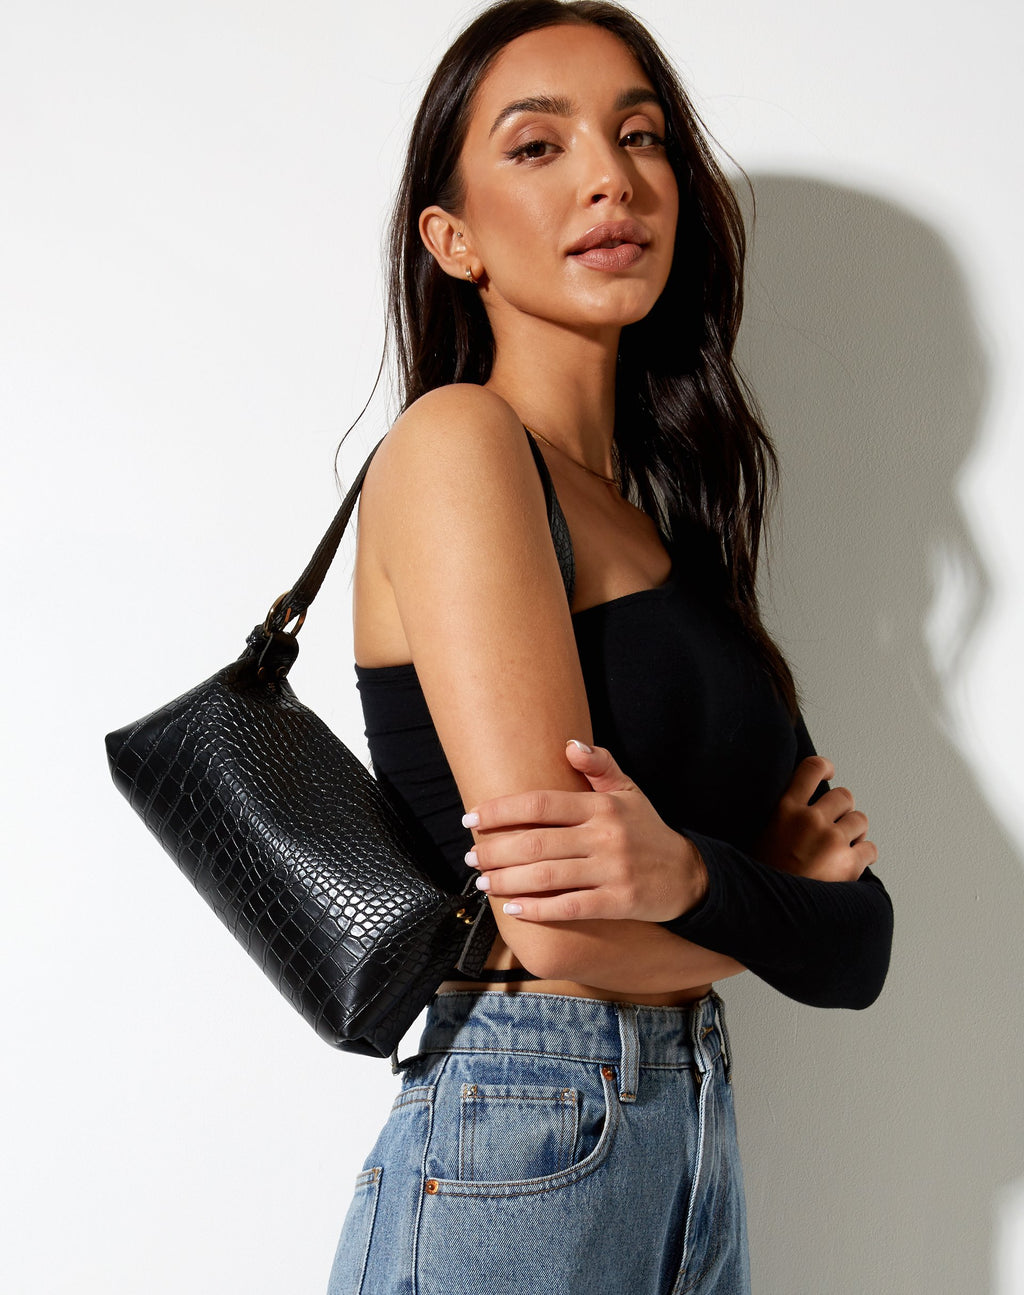 Leila Shoulder Bag in Black